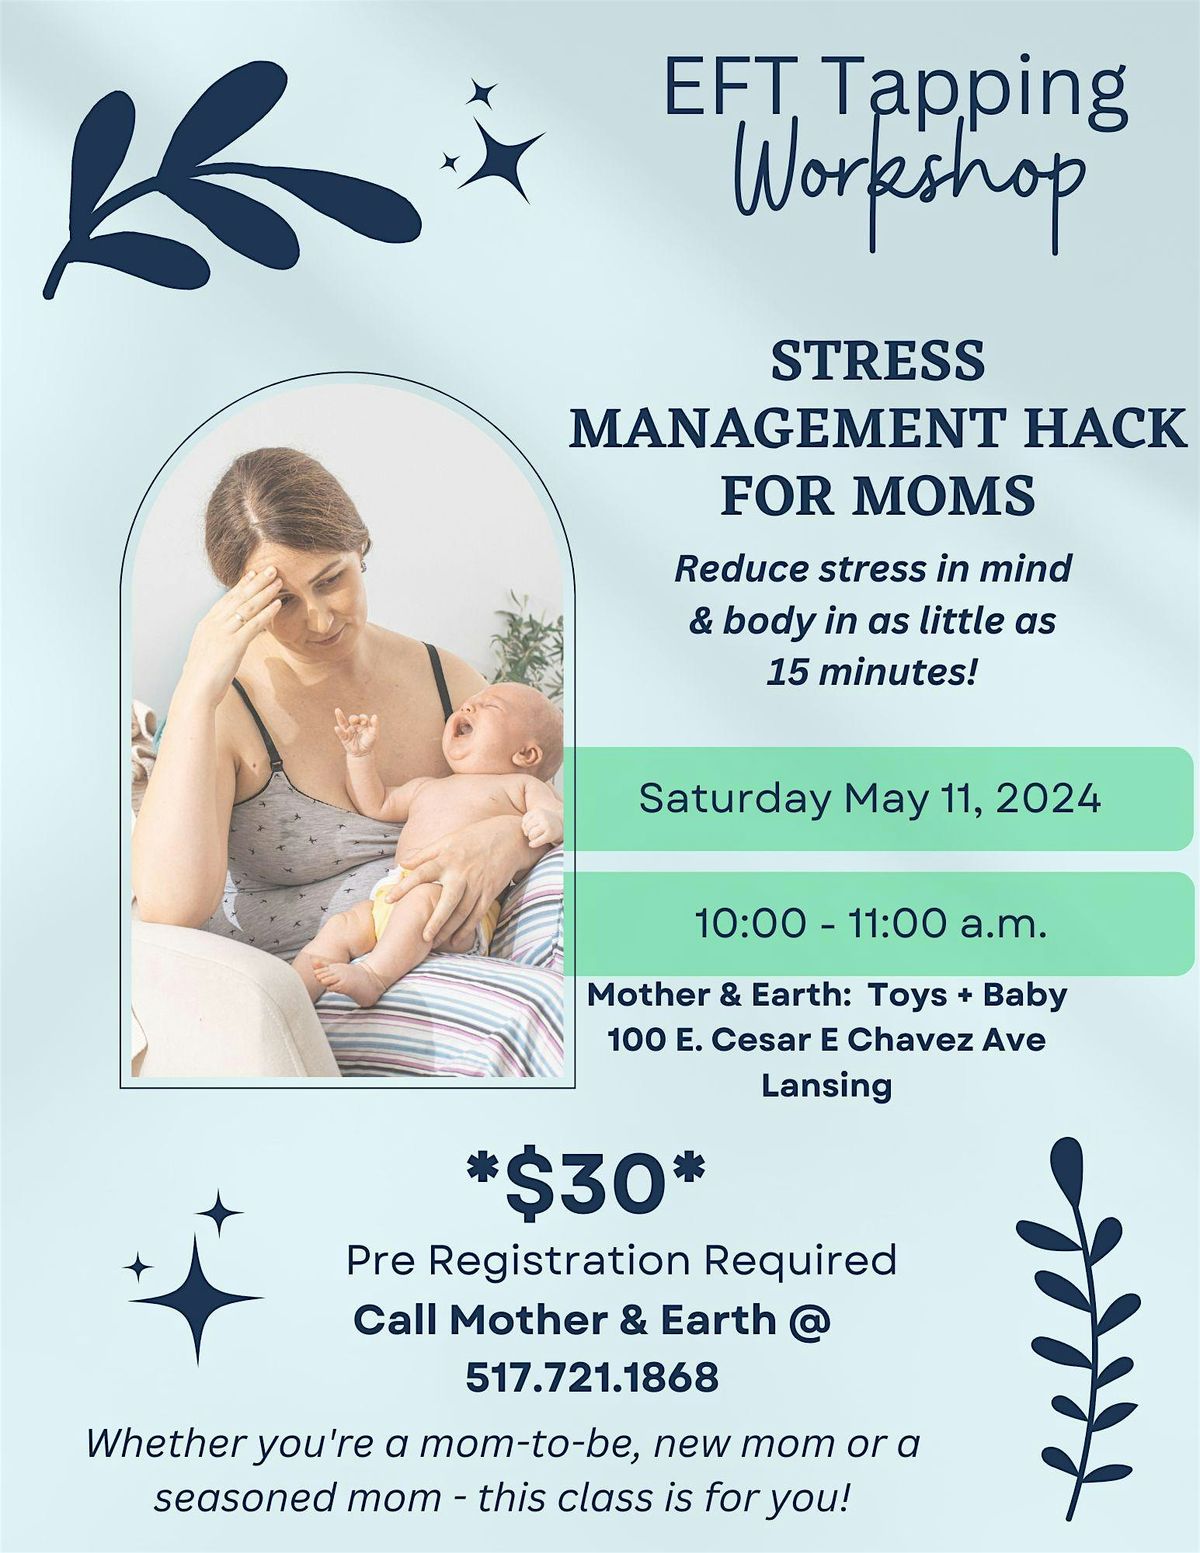 Stress Management Workshop for Moms